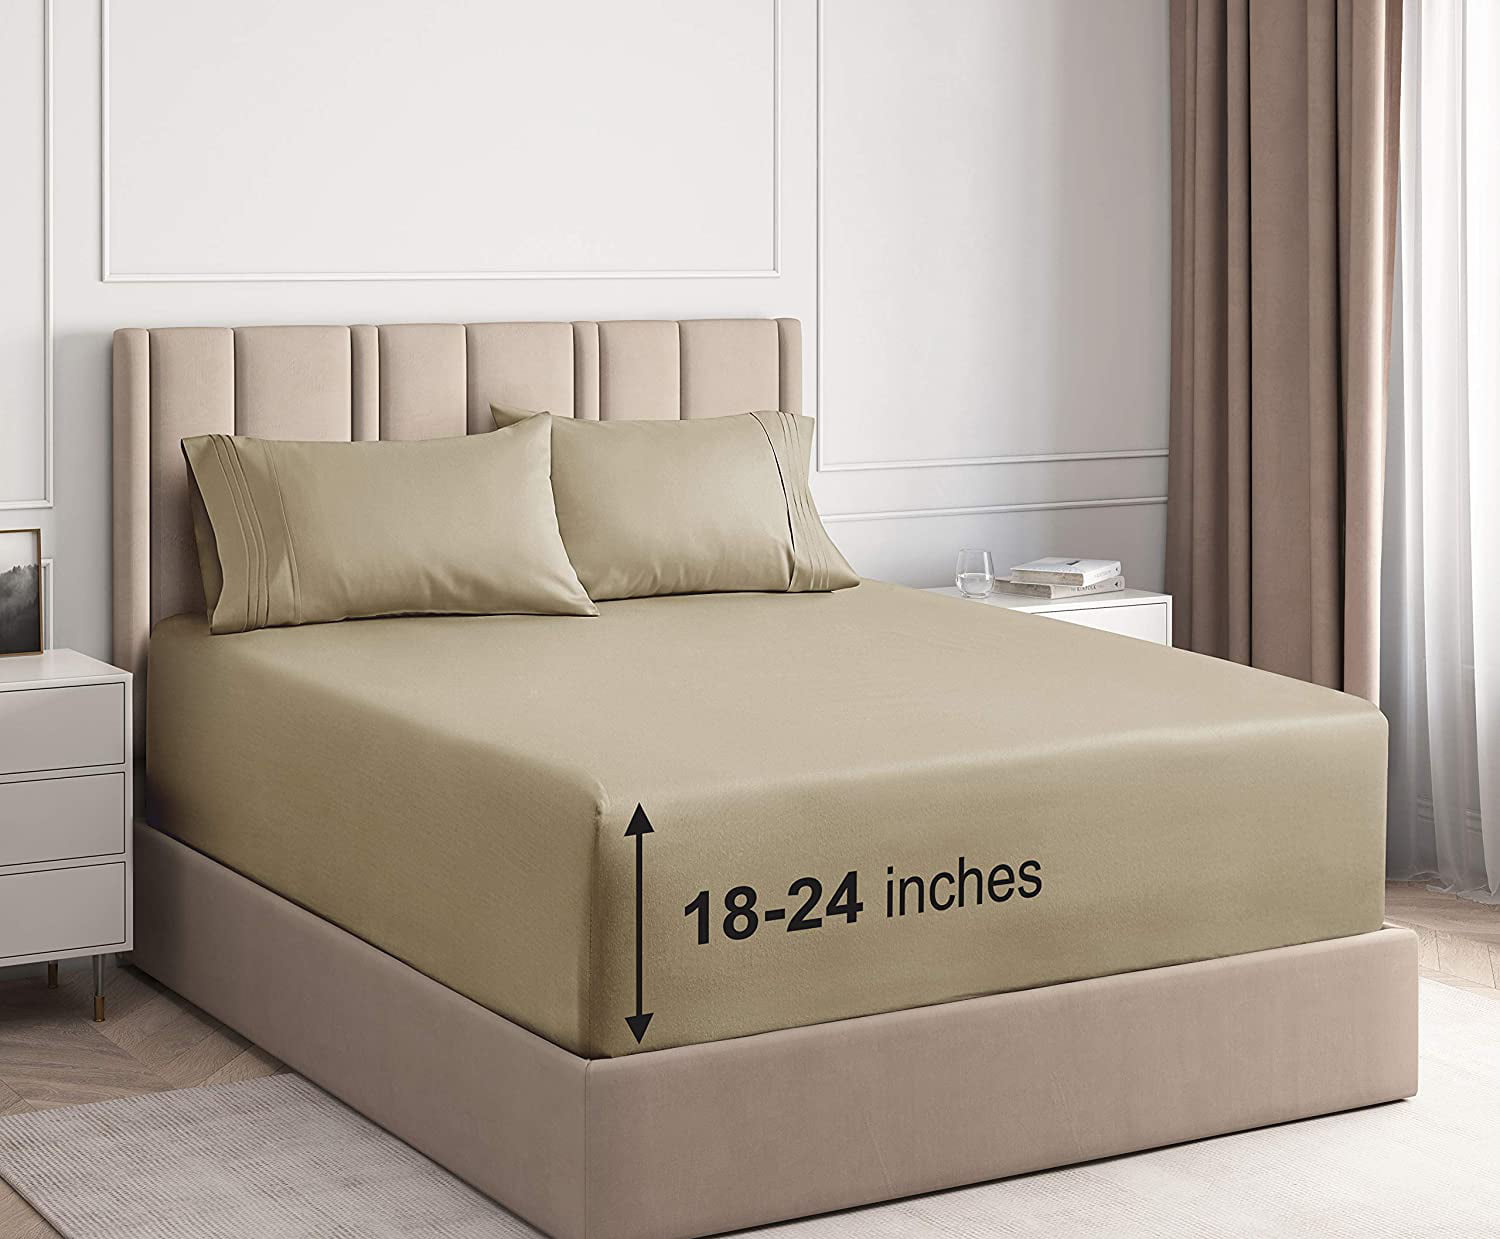 queen size bed sheets deep mattress